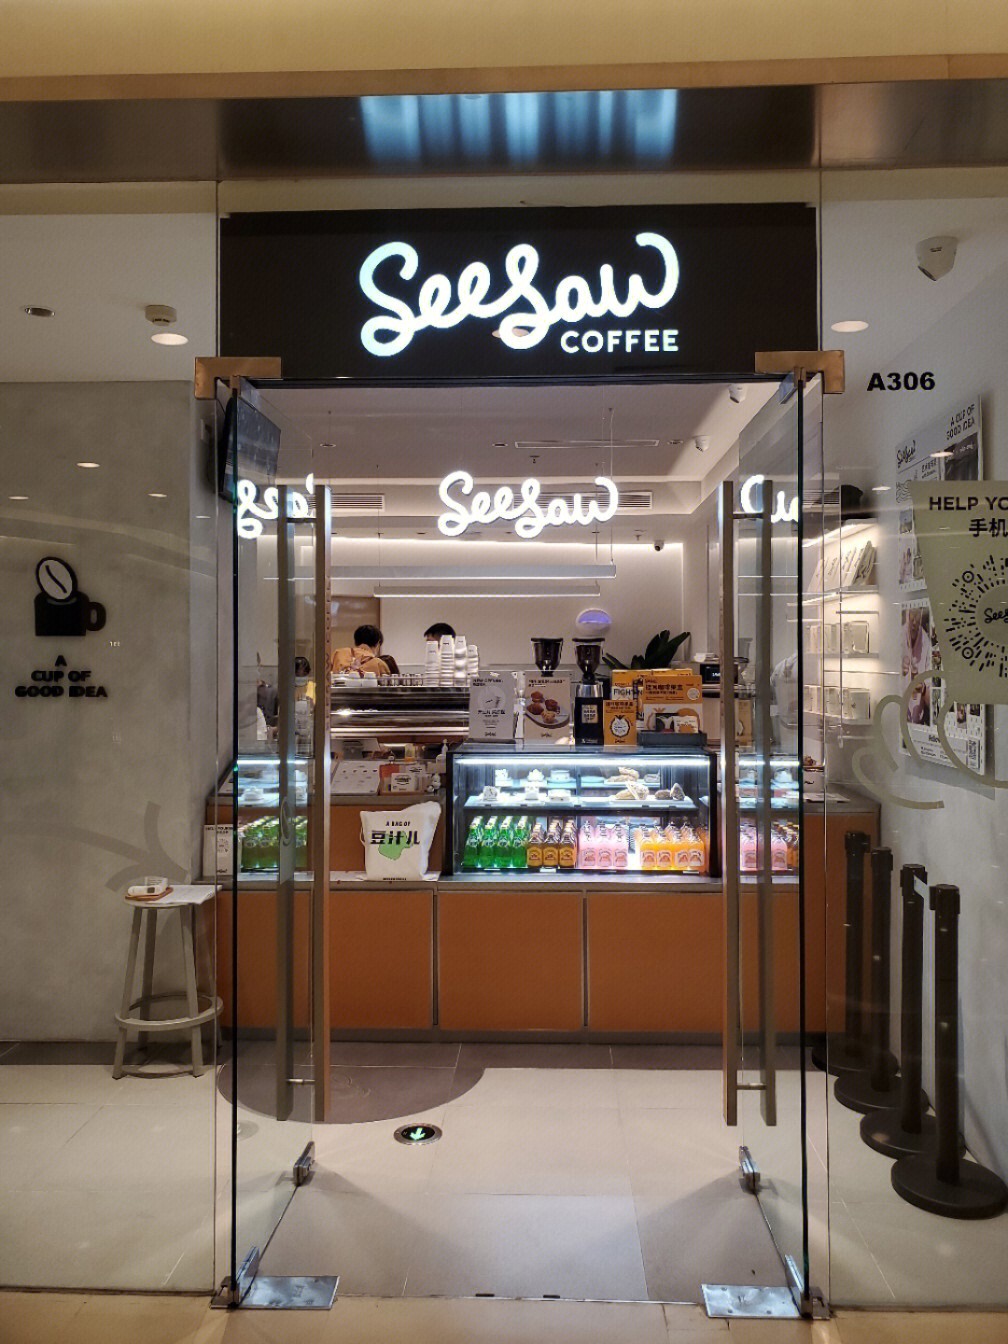 seesaw咖啡门店图片